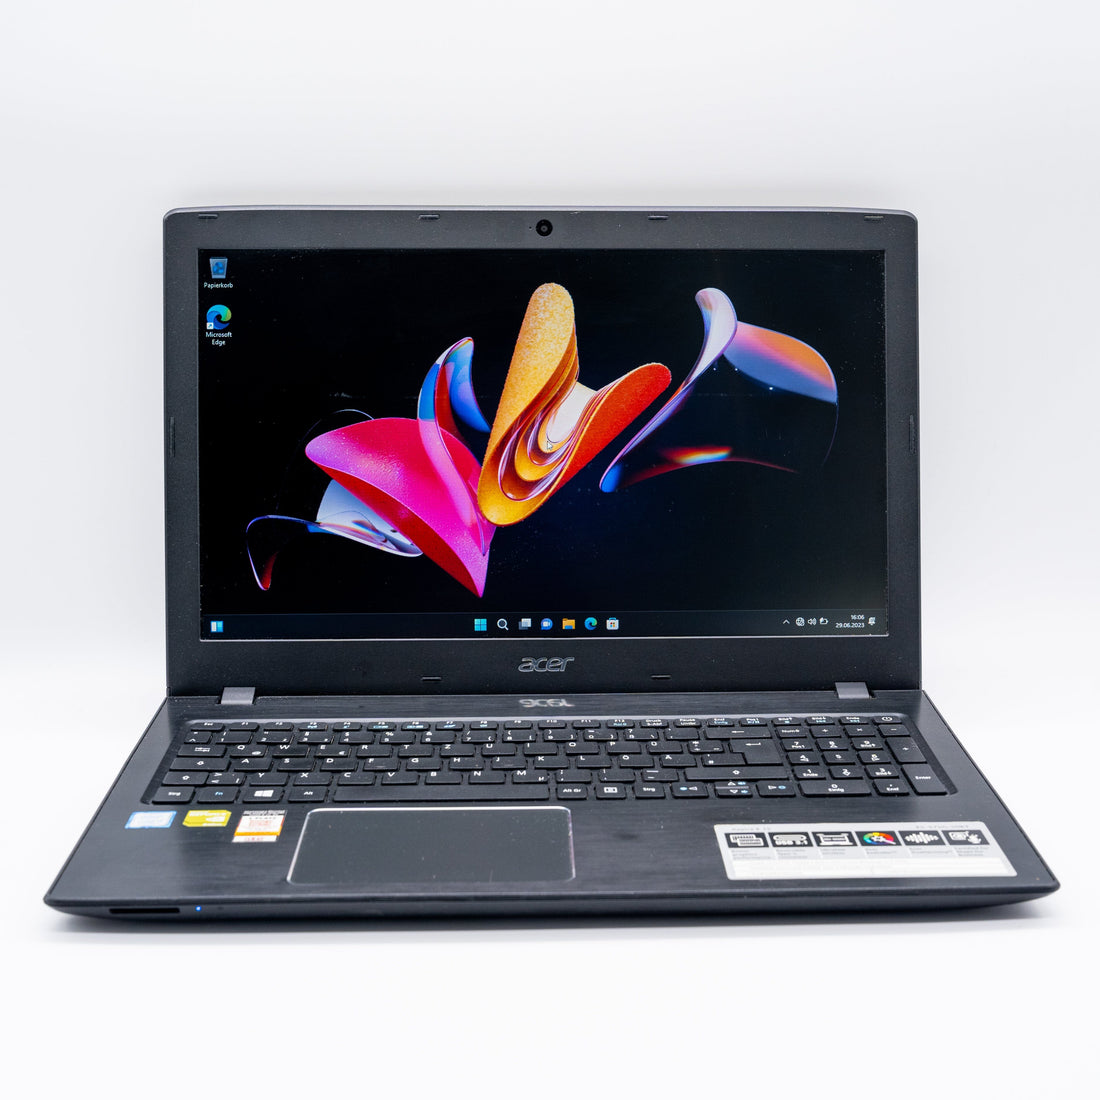 Acer Aspire Intel i5-7200U NVIDIA 940MX 256GB SSD 15,6 FHD Laptops Notebook-Pro Intel Core i5-7200U 8GB DDR4 256GB